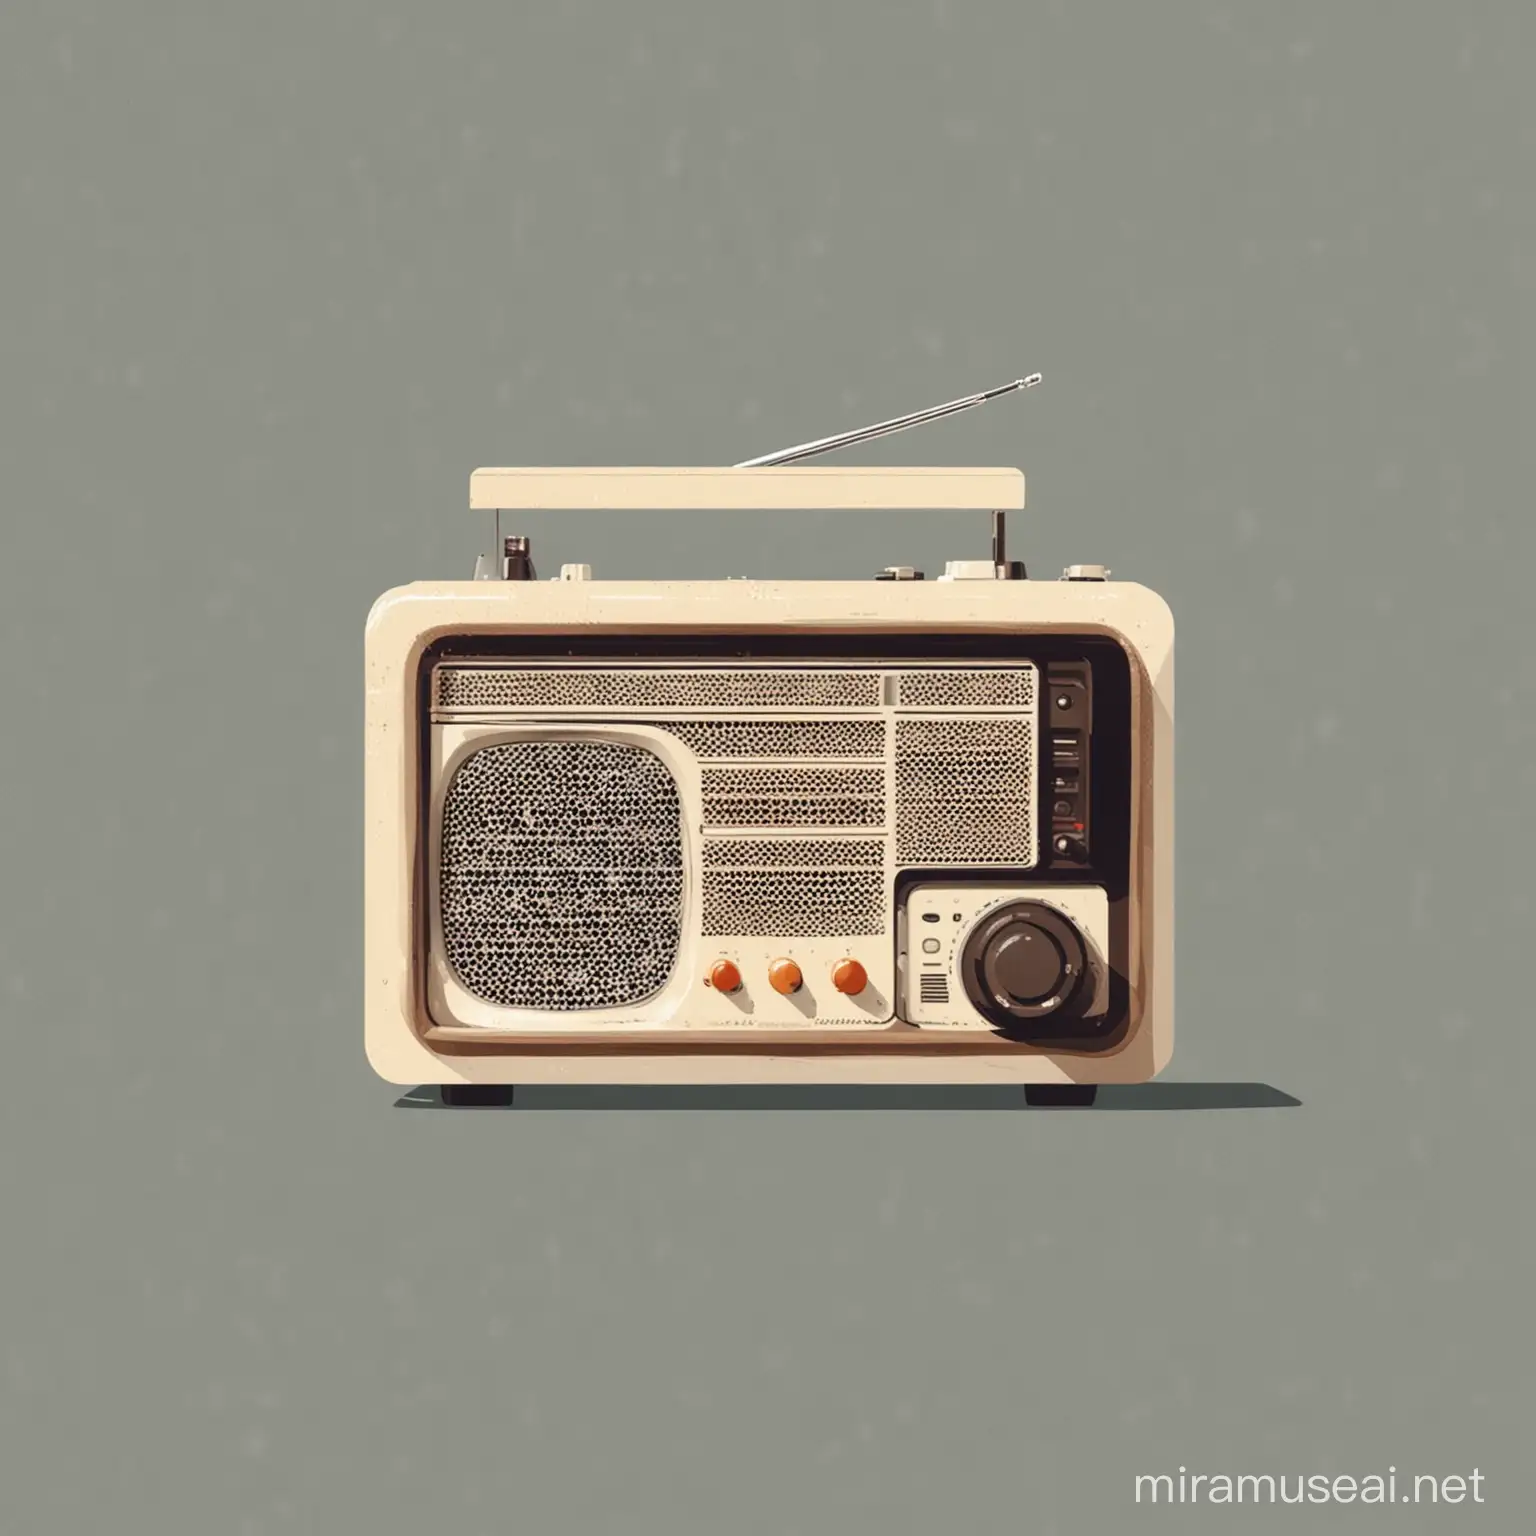 радио, векторная иллюстрация, минимализм
